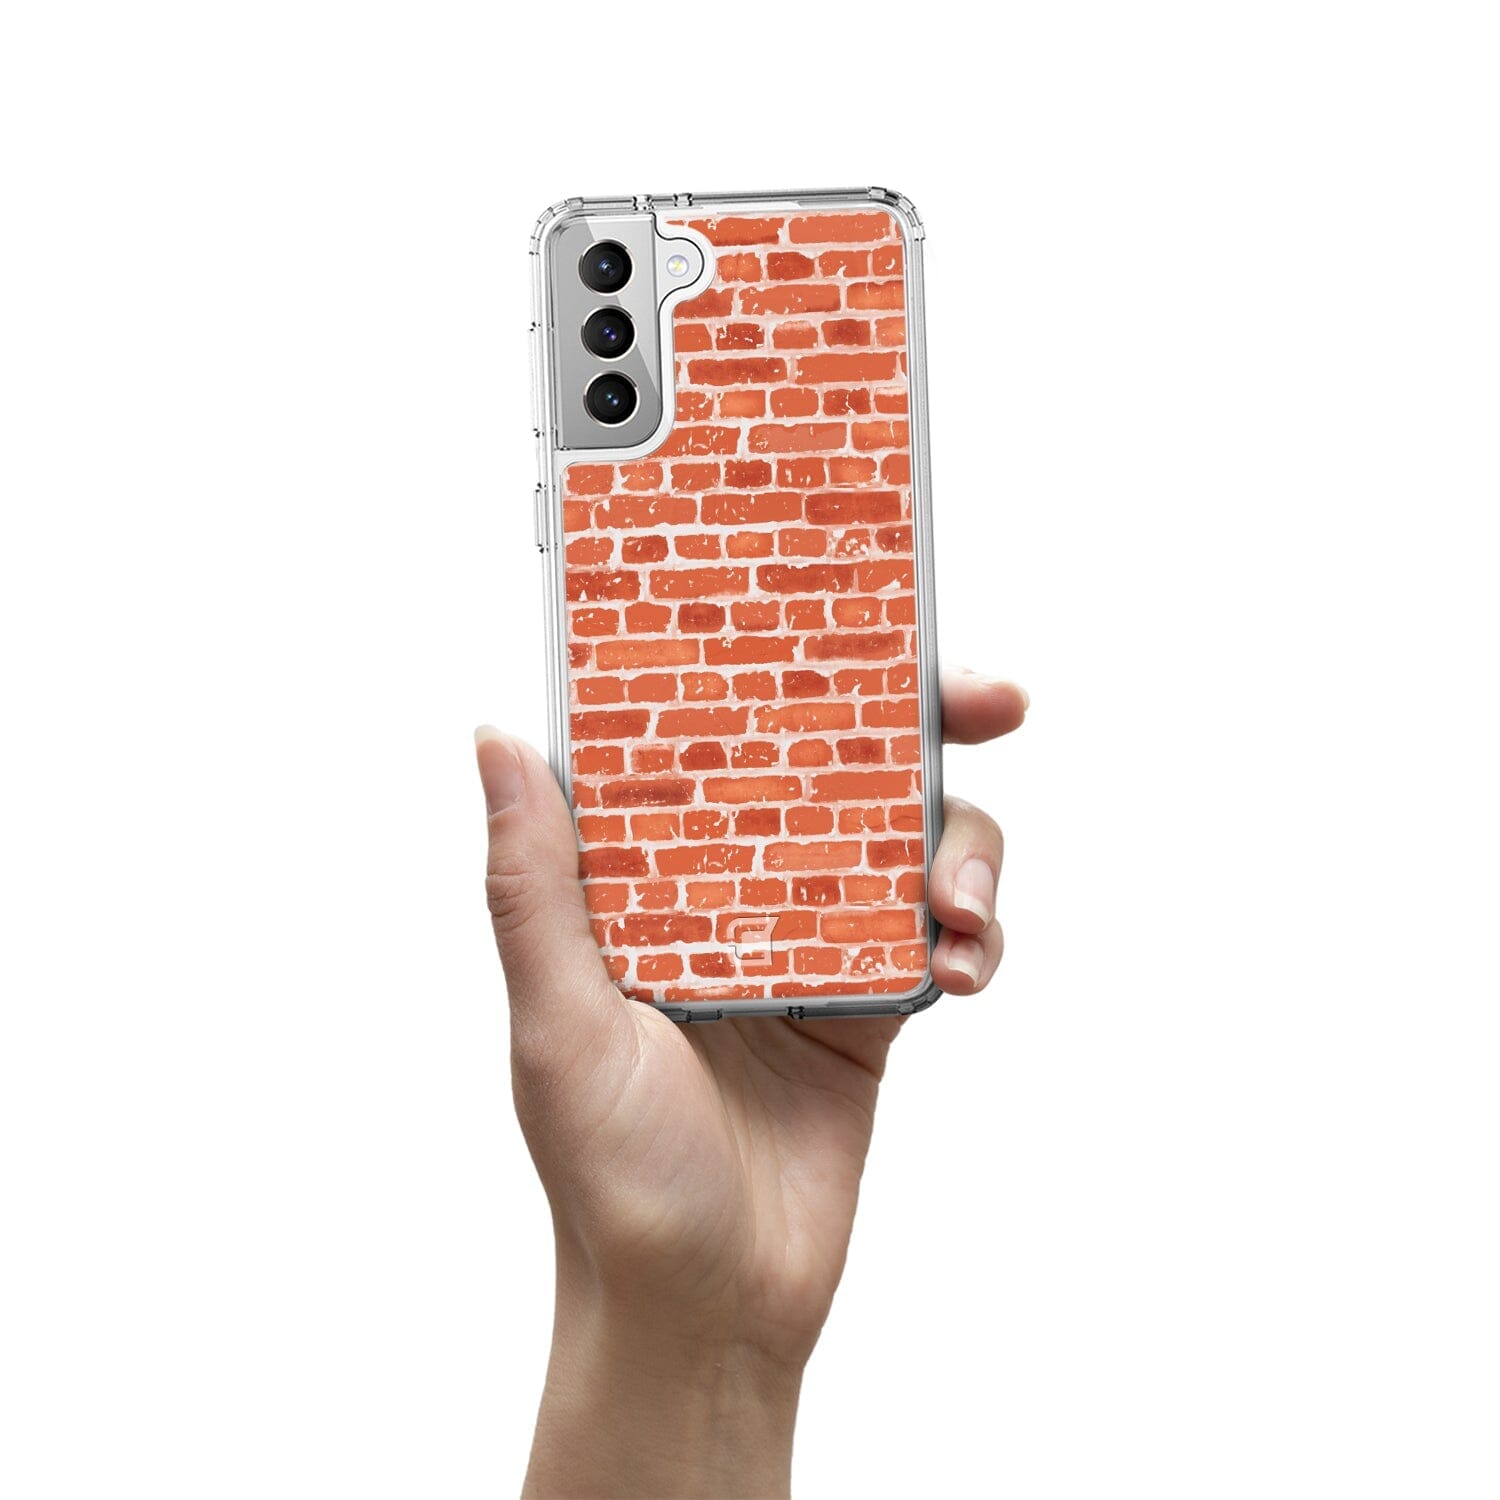 Samsung Galaxy S21 Case - Brick Texture Design